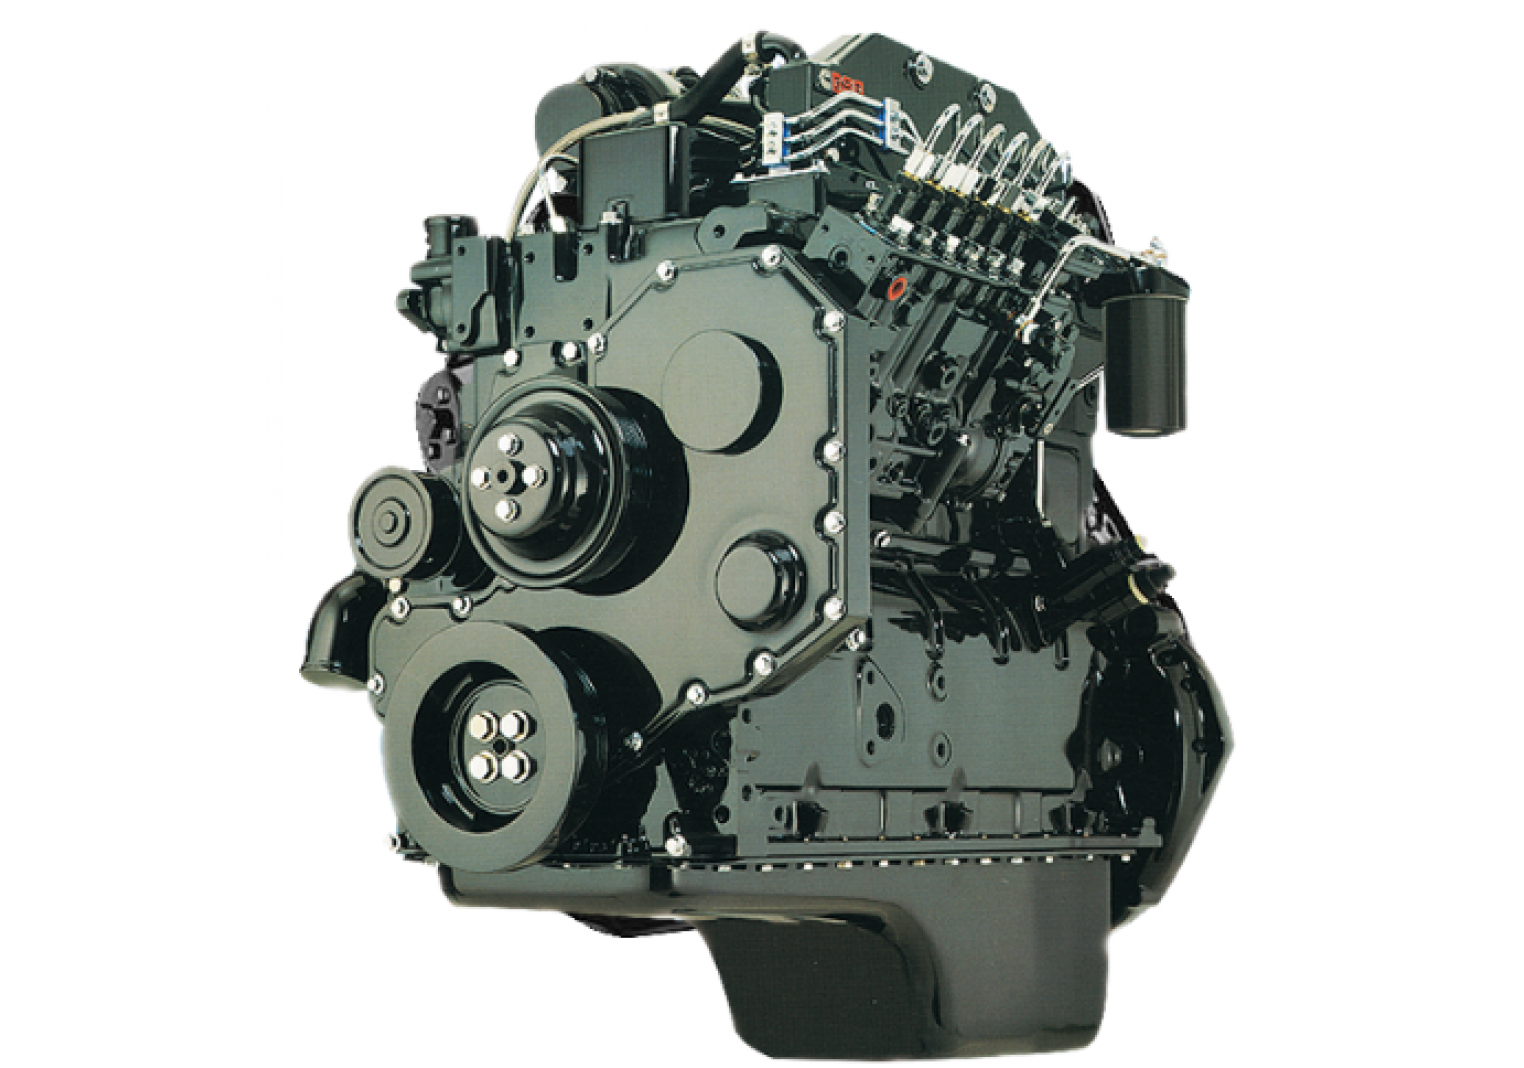 Marine Generator Diesel Engine 6bt5.9-GM83